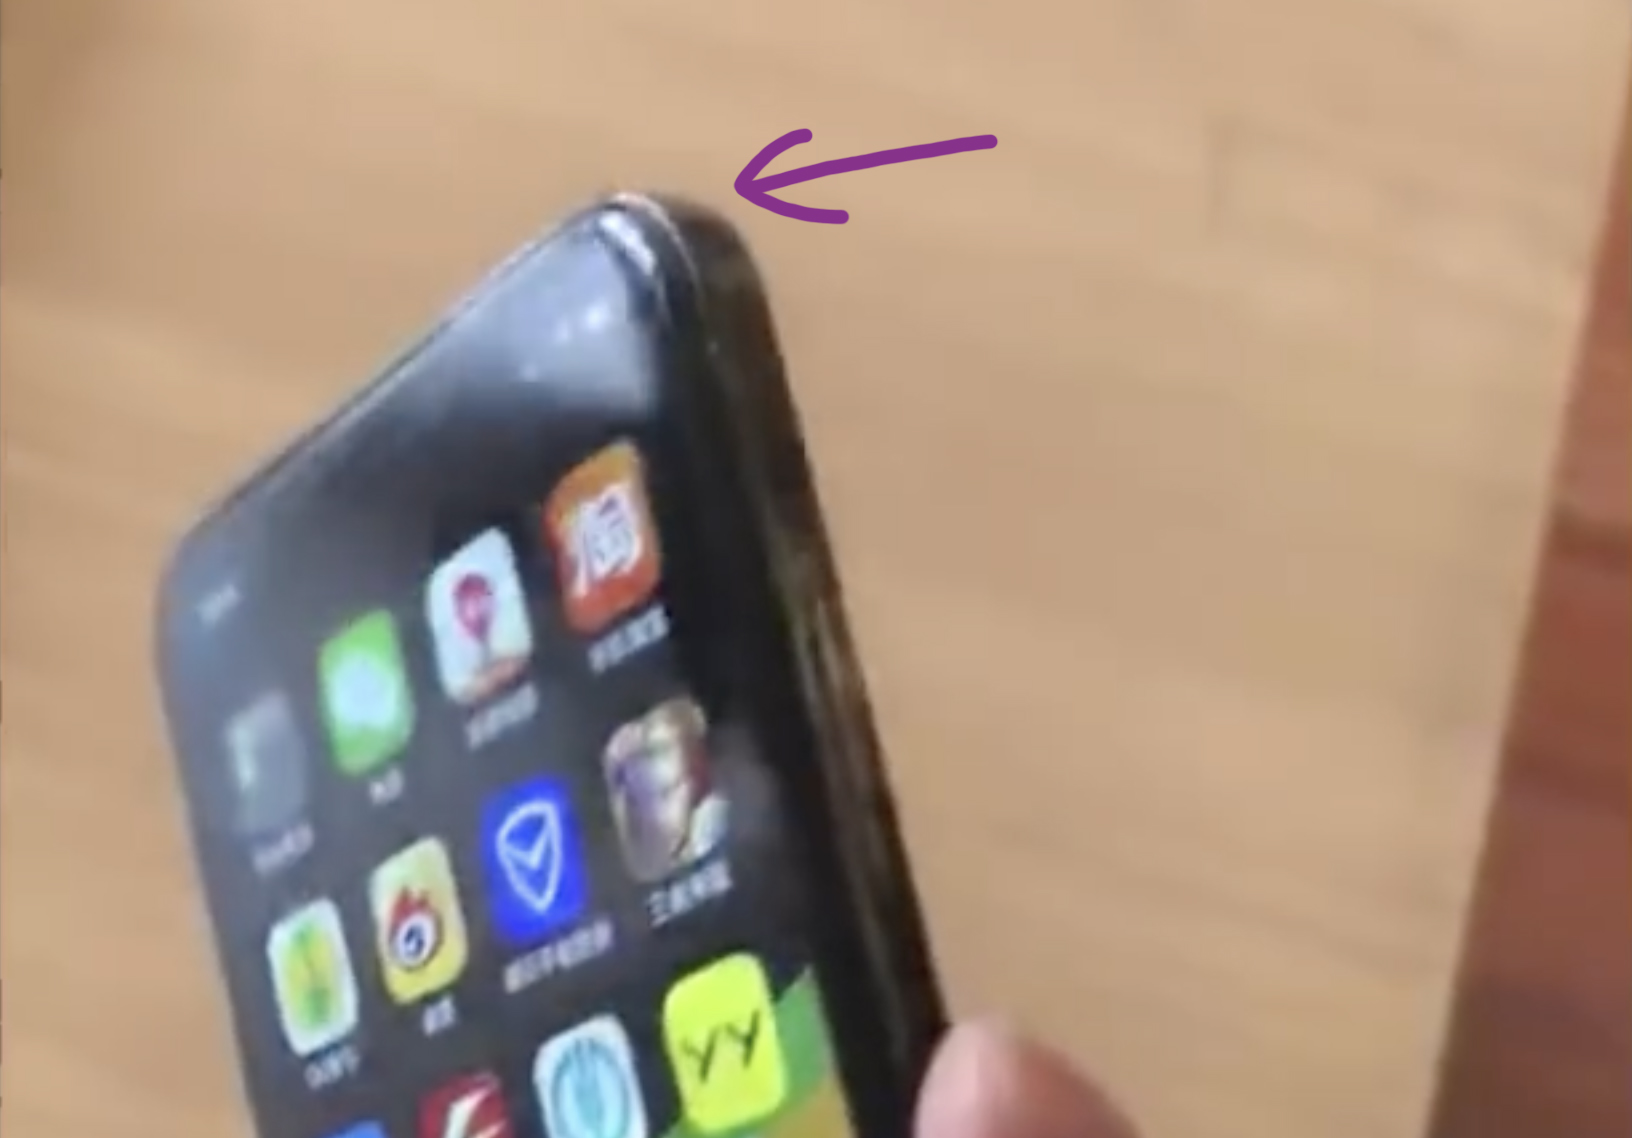 2 iPhone SE 2: Dieses Modell ist leider ein Fake